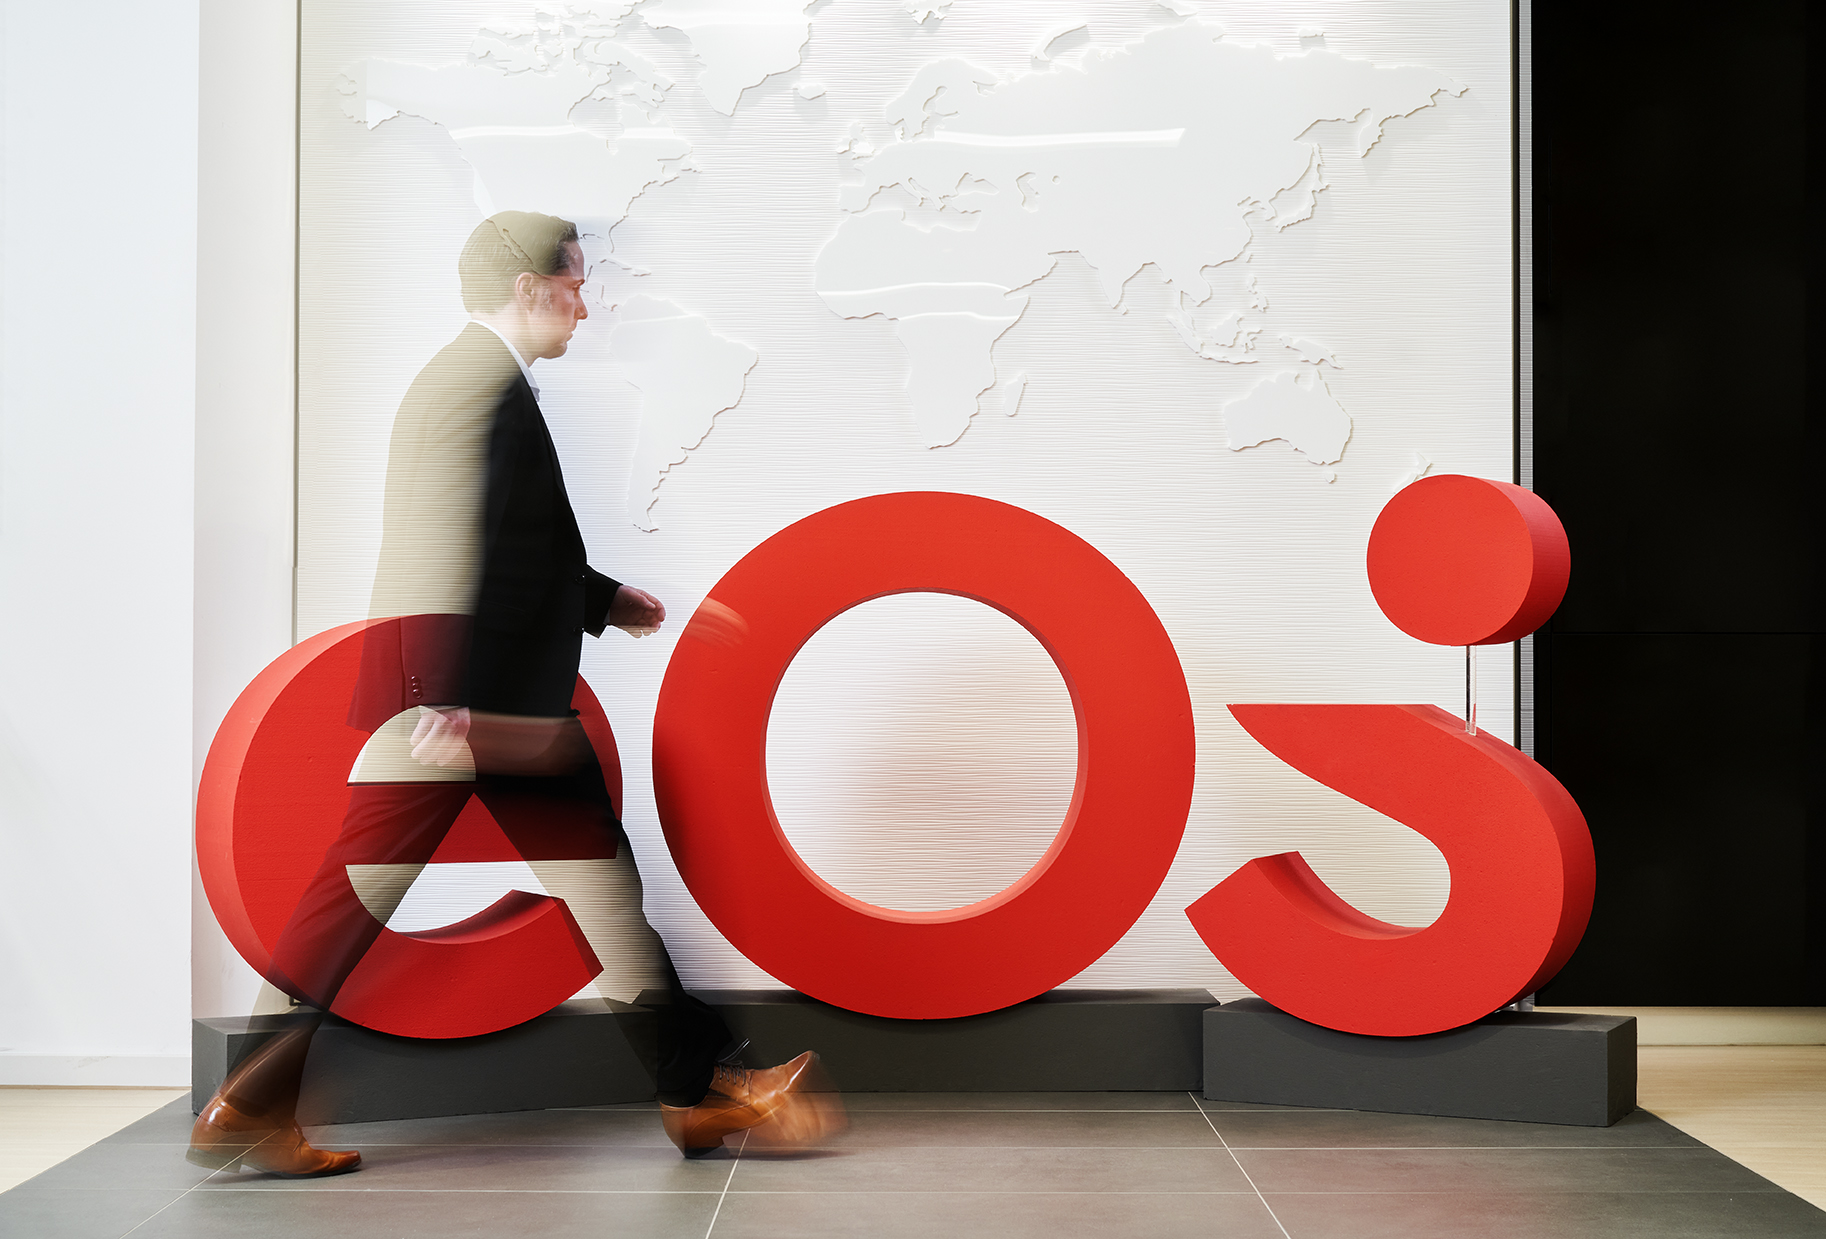 Das ist die neue Marke EOS: Das neue Logo schmückt die Lobby des EOS Headquarters.